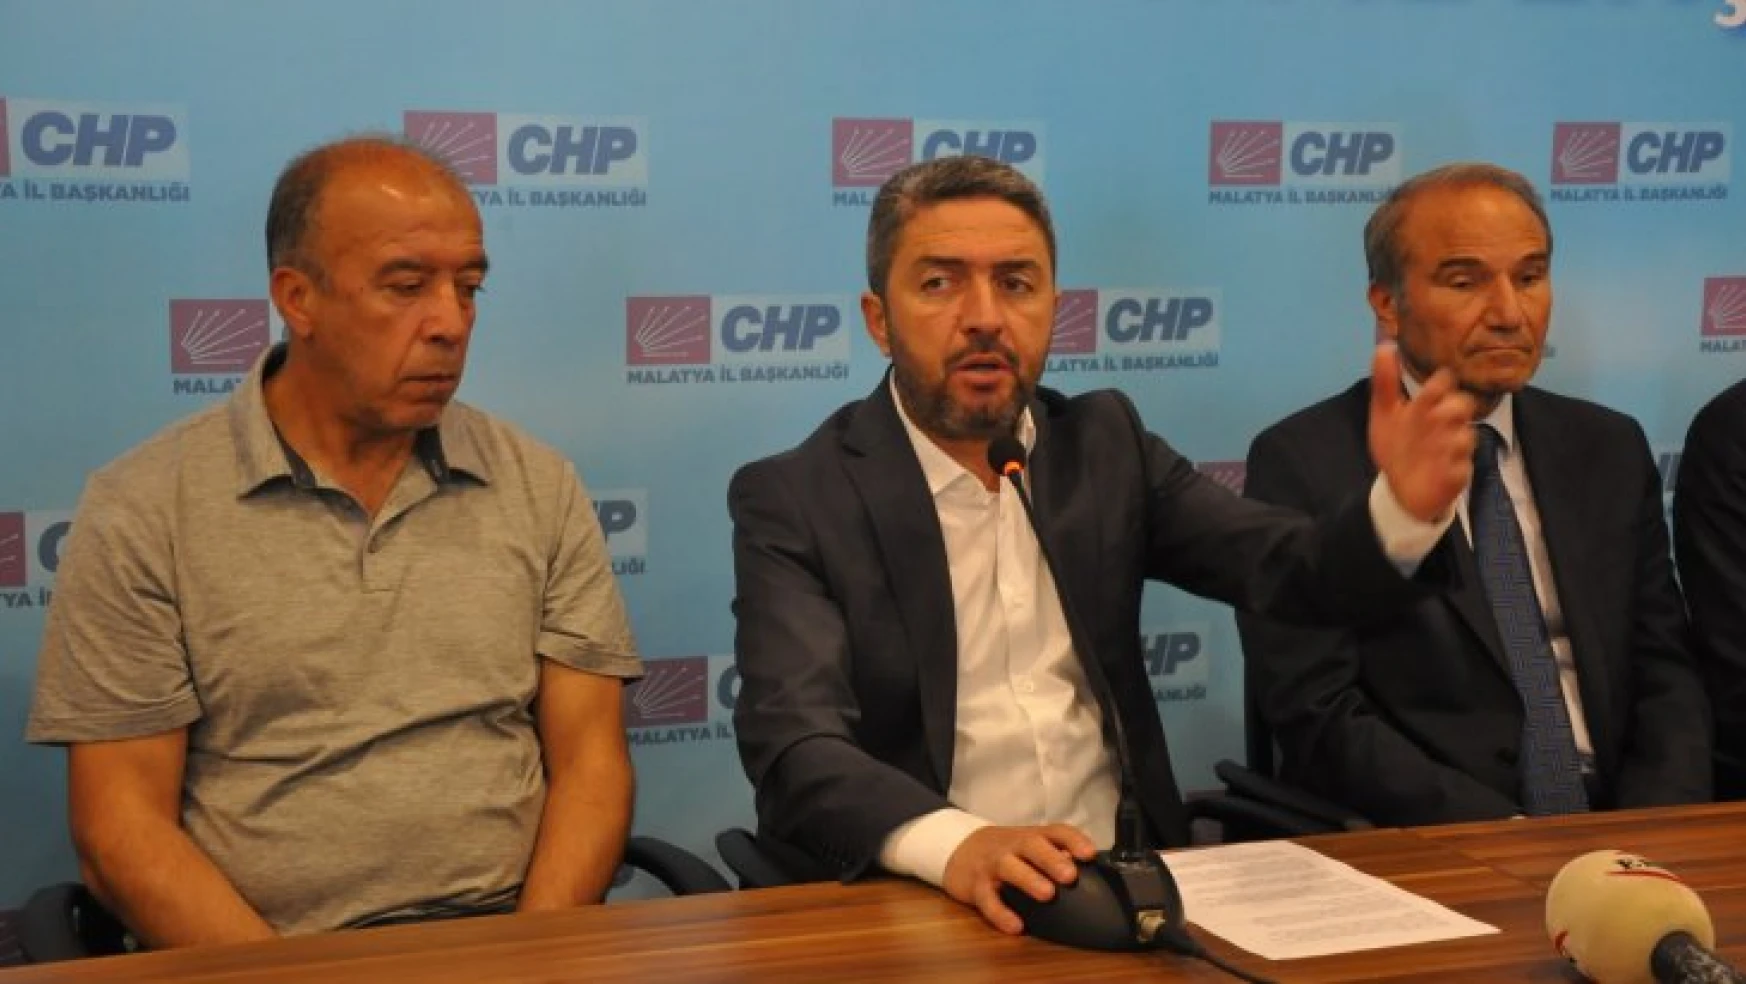 CHP İstanbul İl Başkanı Canan Kaftancıoğlu'na destek